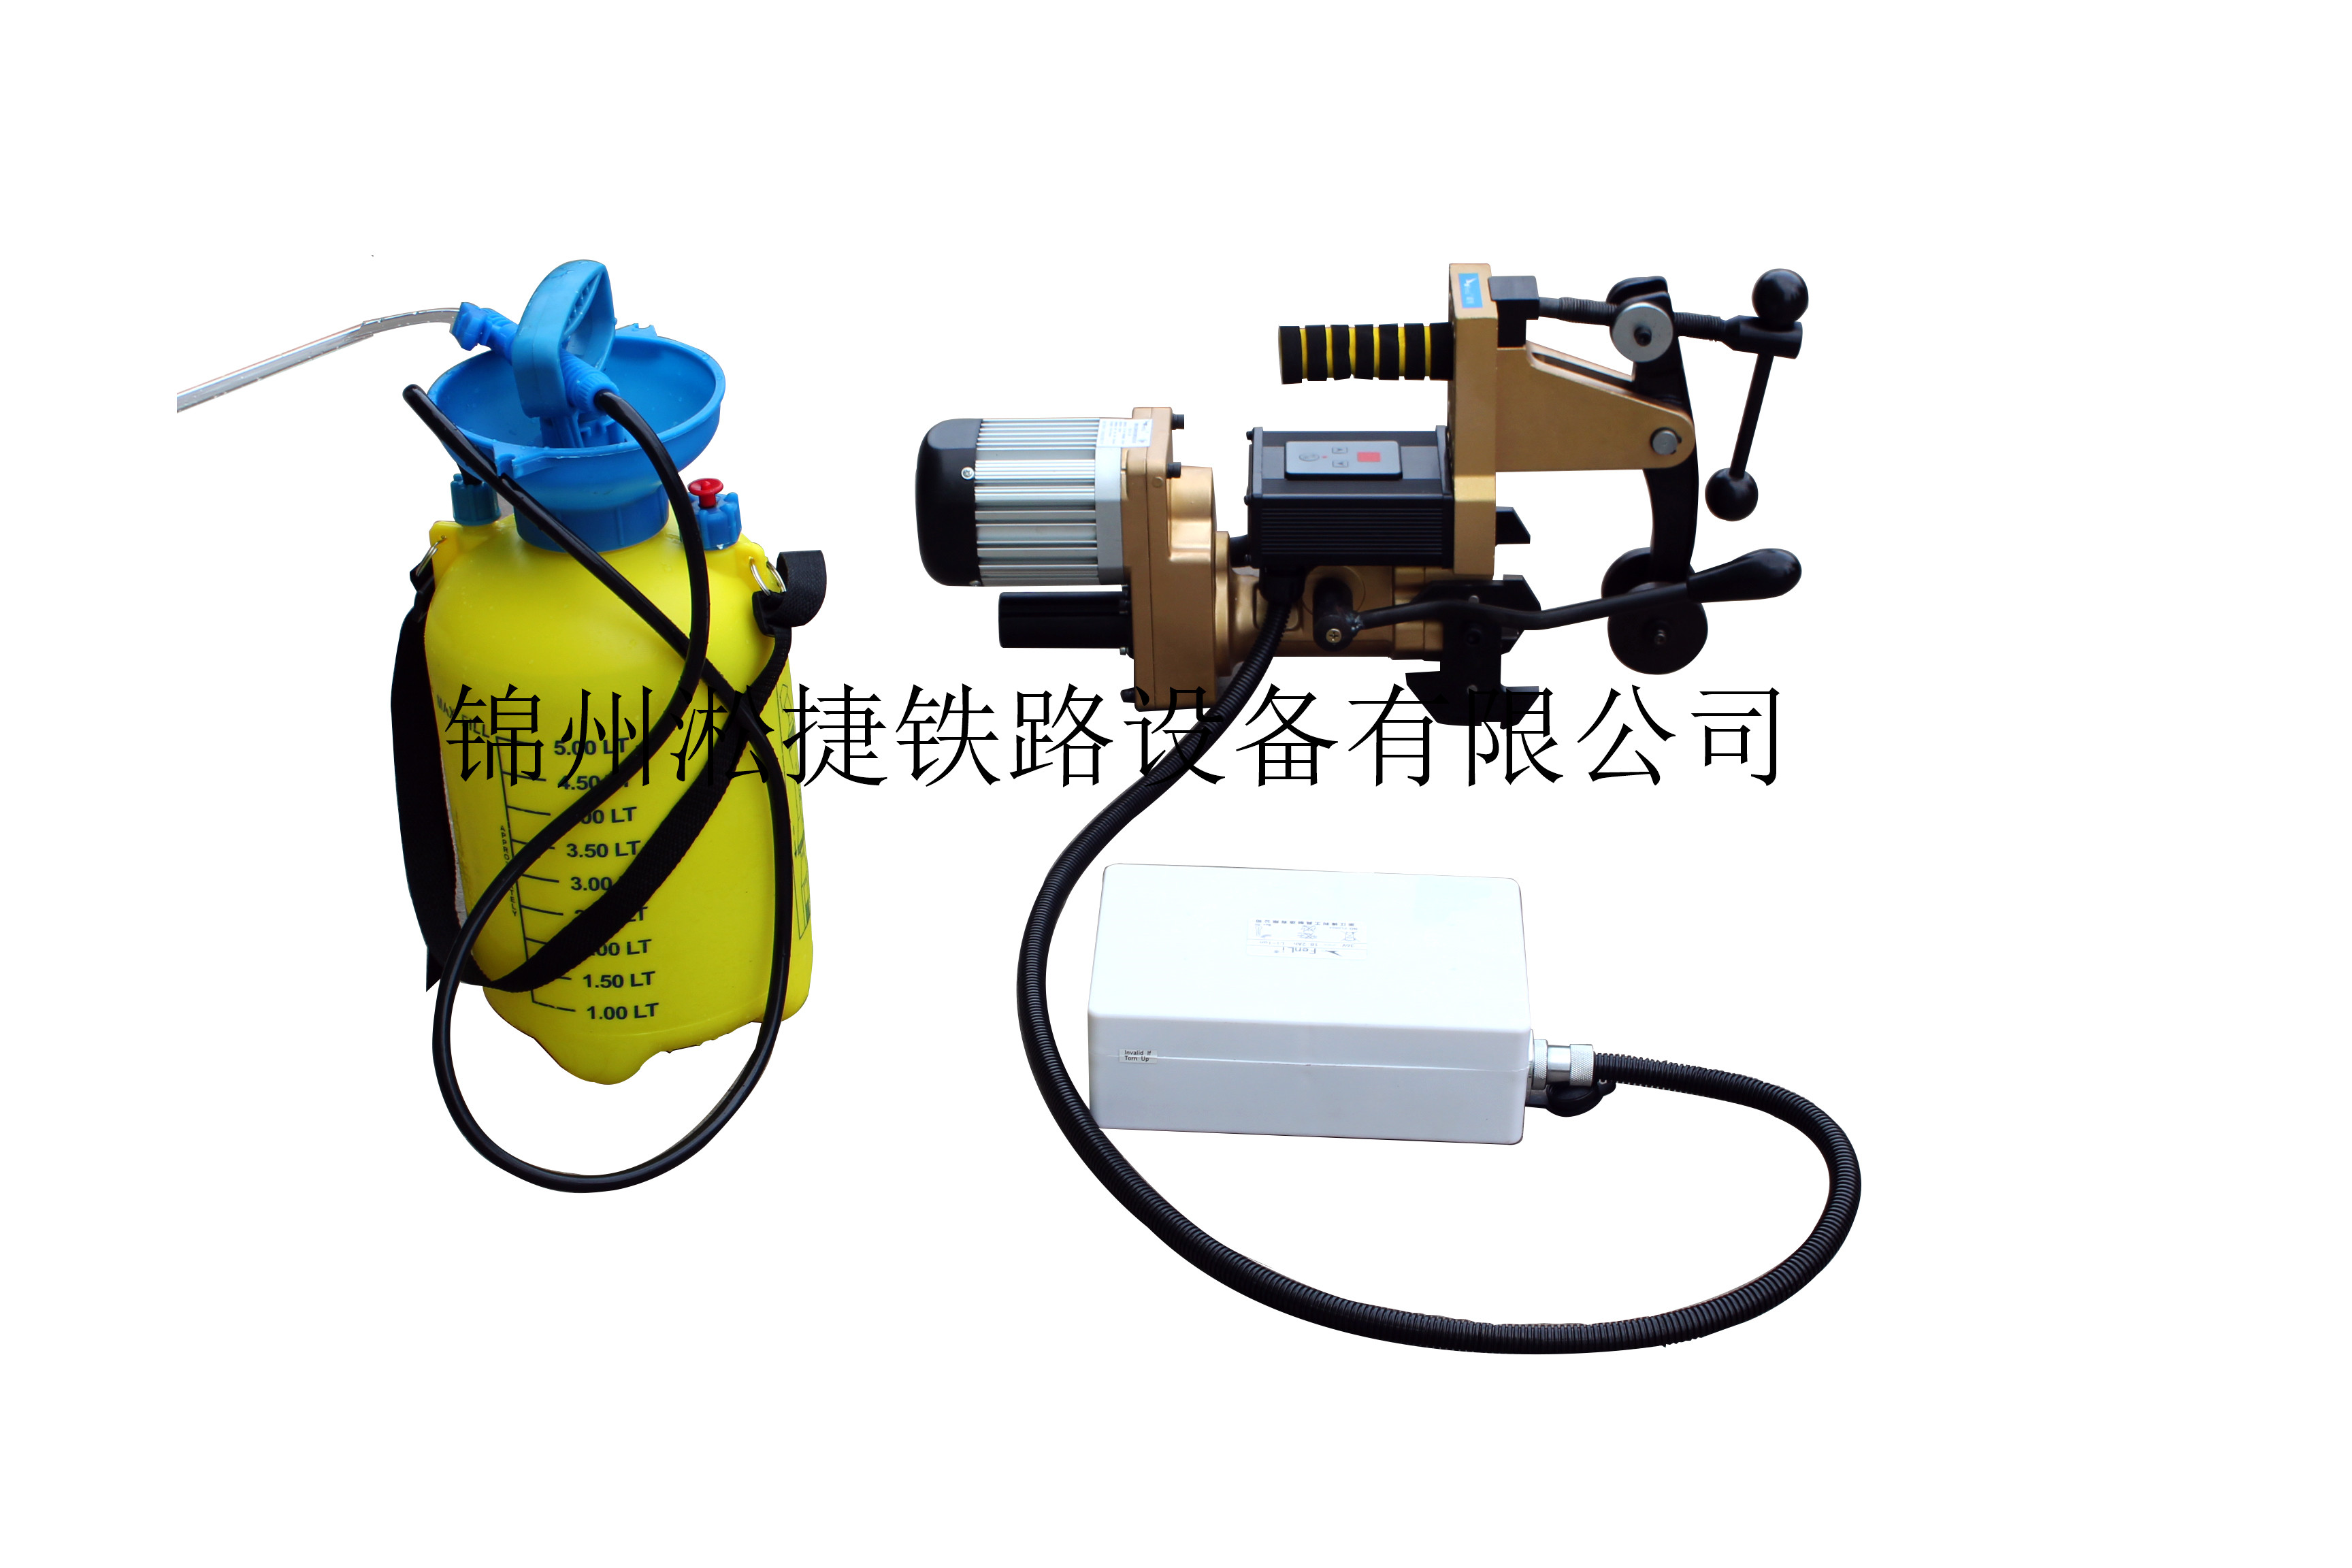 辽宁锦州LZG-31锂电钻孔机厂家销售价格 淞捷铁路设备